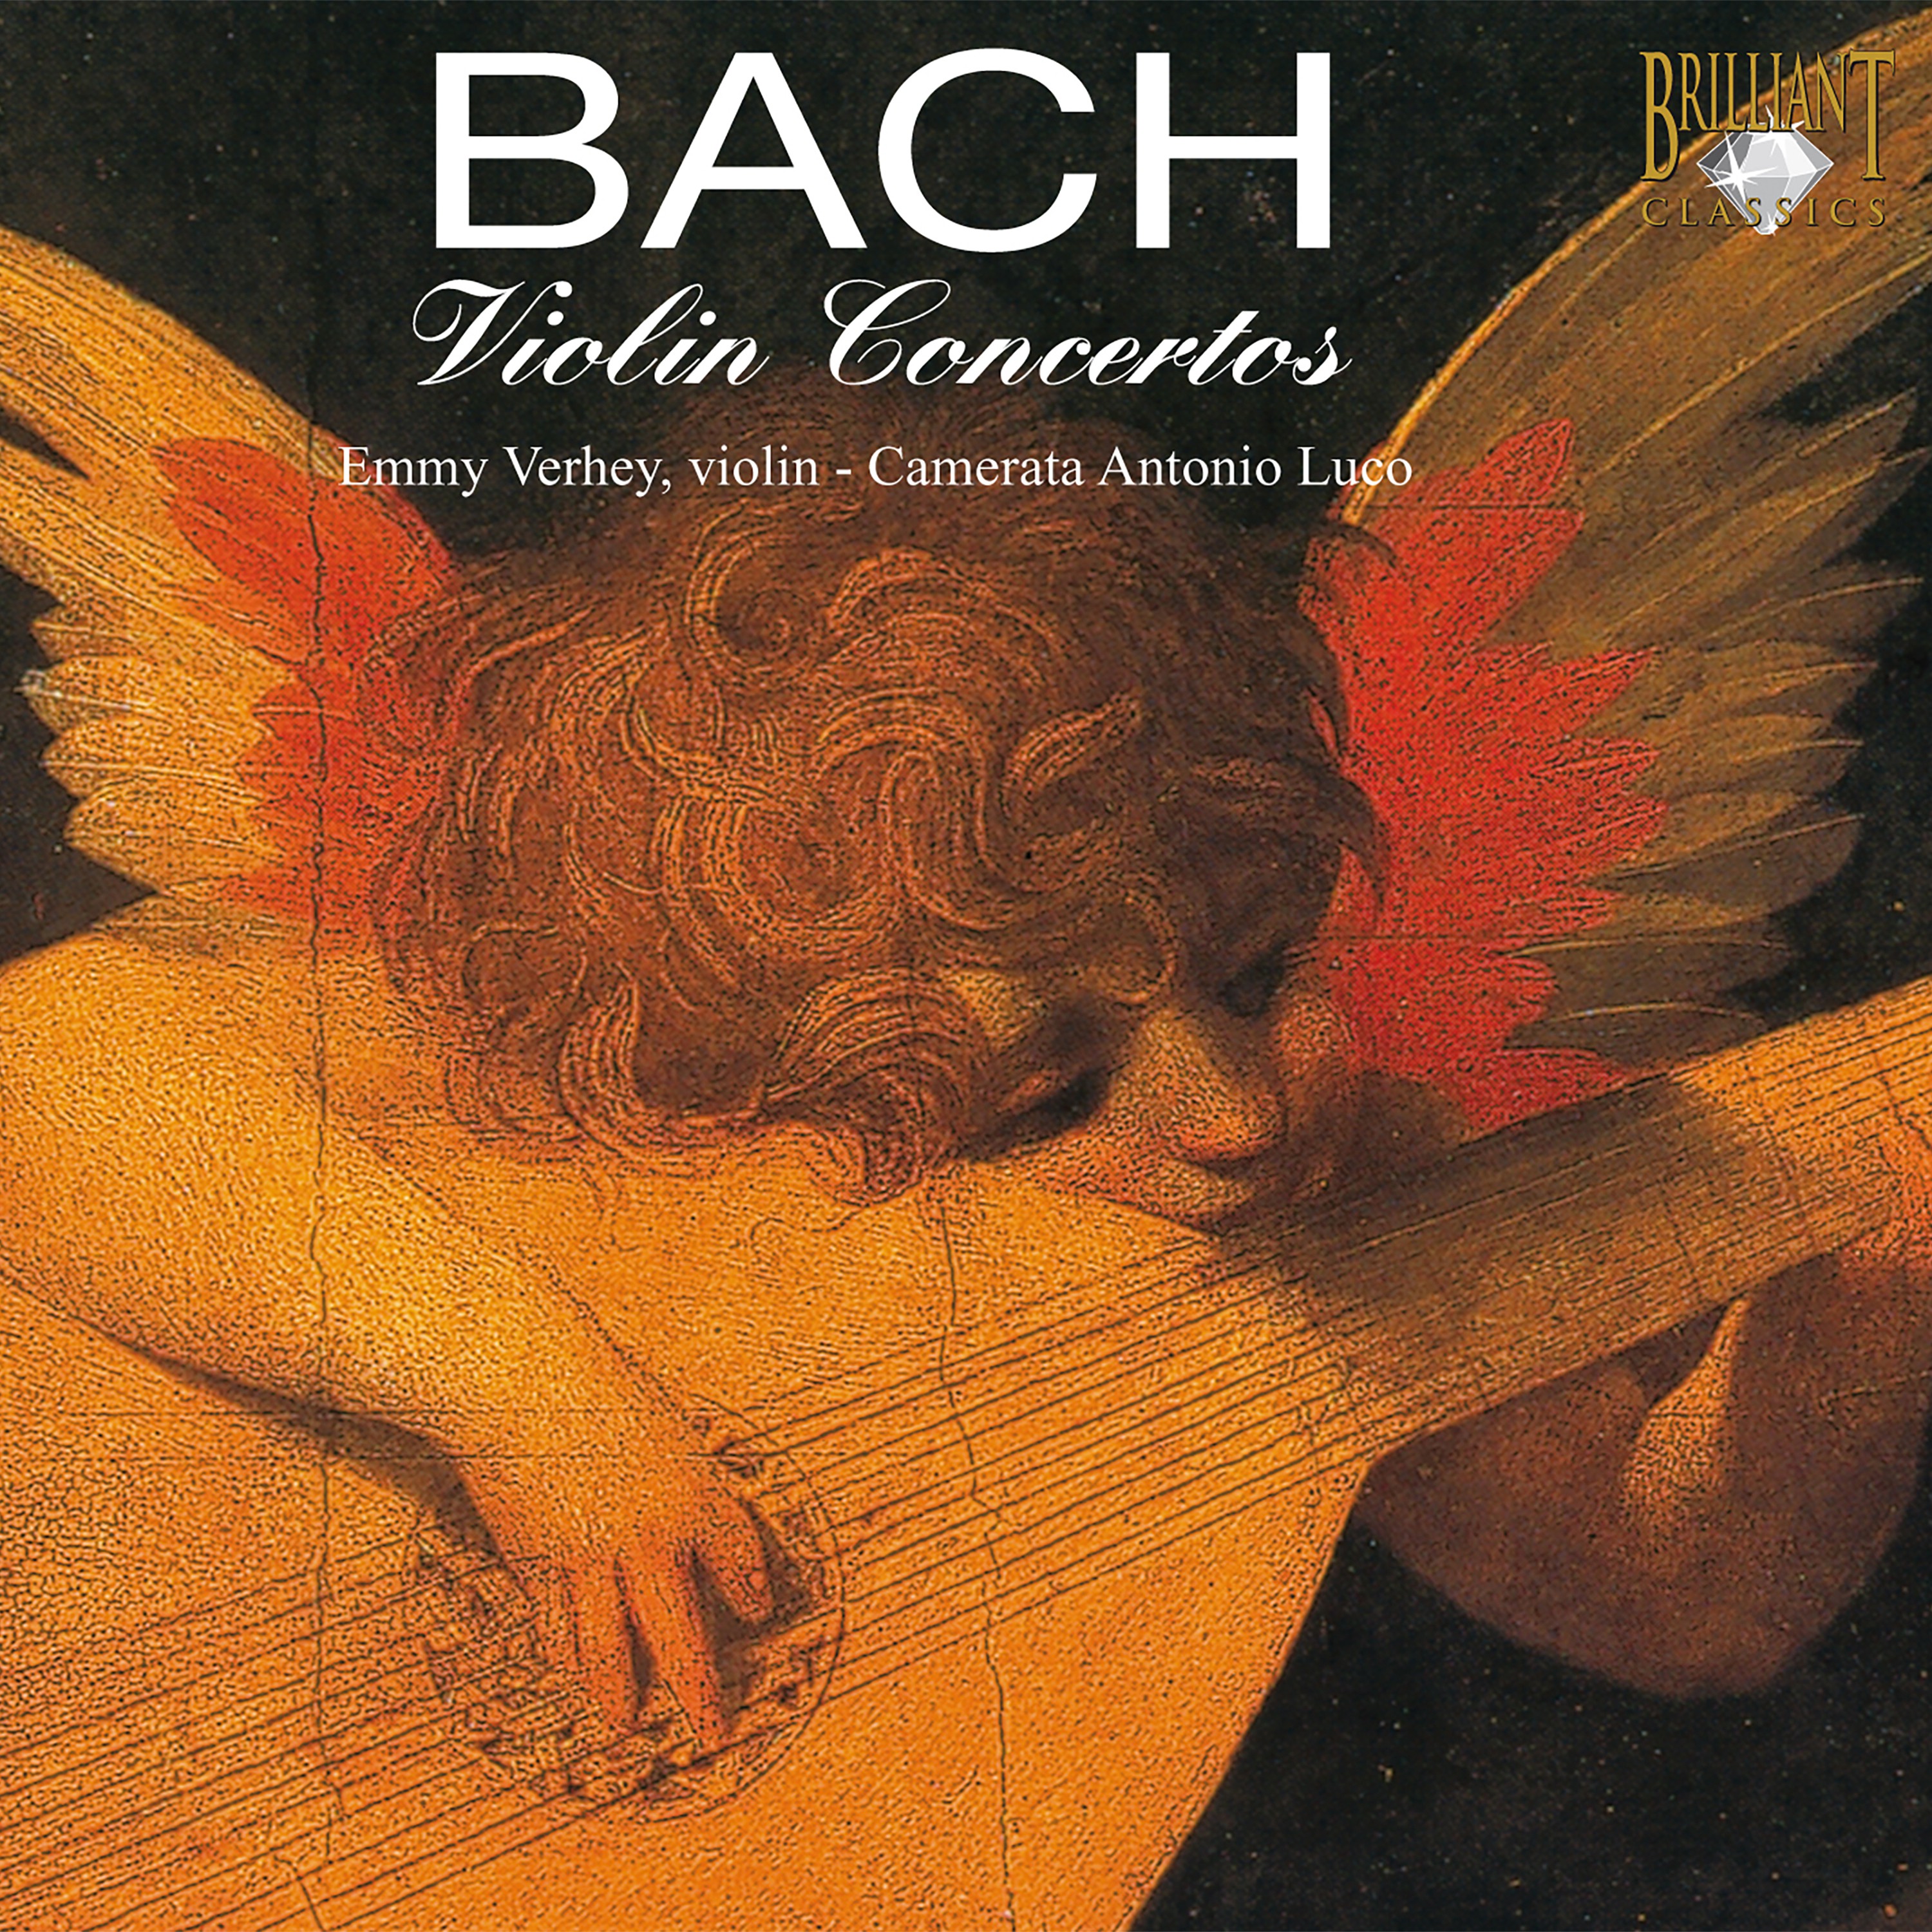 Violin Concerto in A Minor, BWV 1041: Allegro